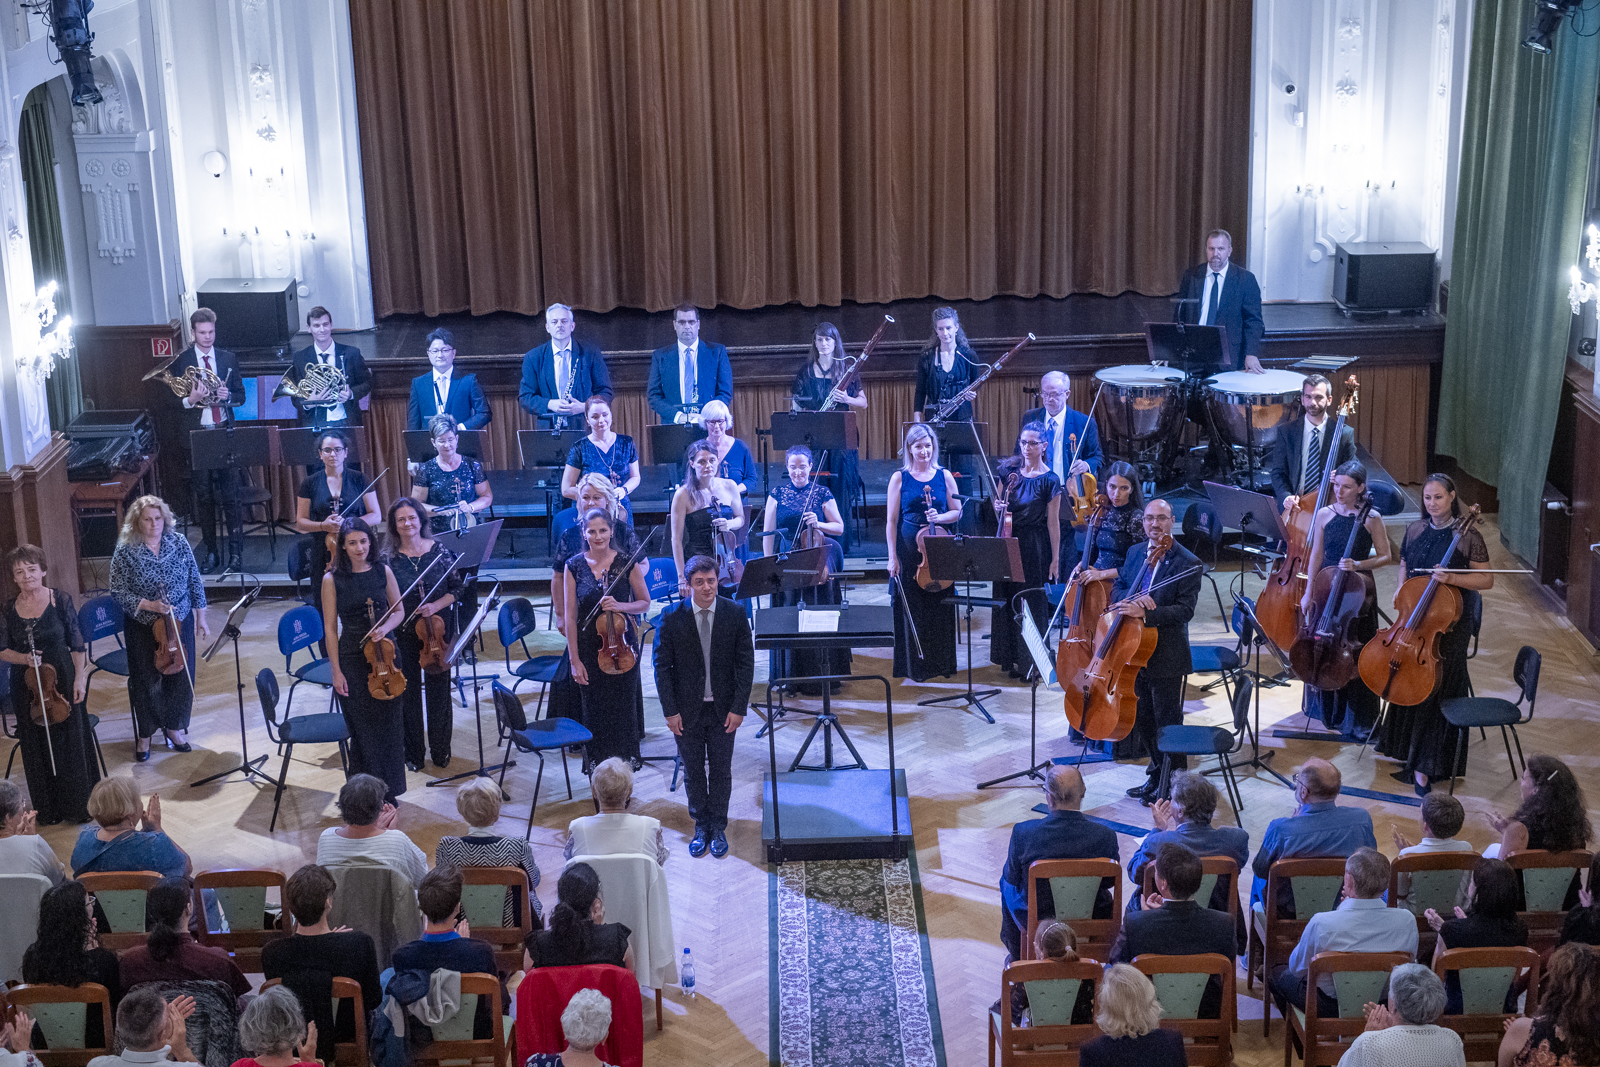 A Somorjai sorozat nyitókoncertje a szimfonikus zenekarral